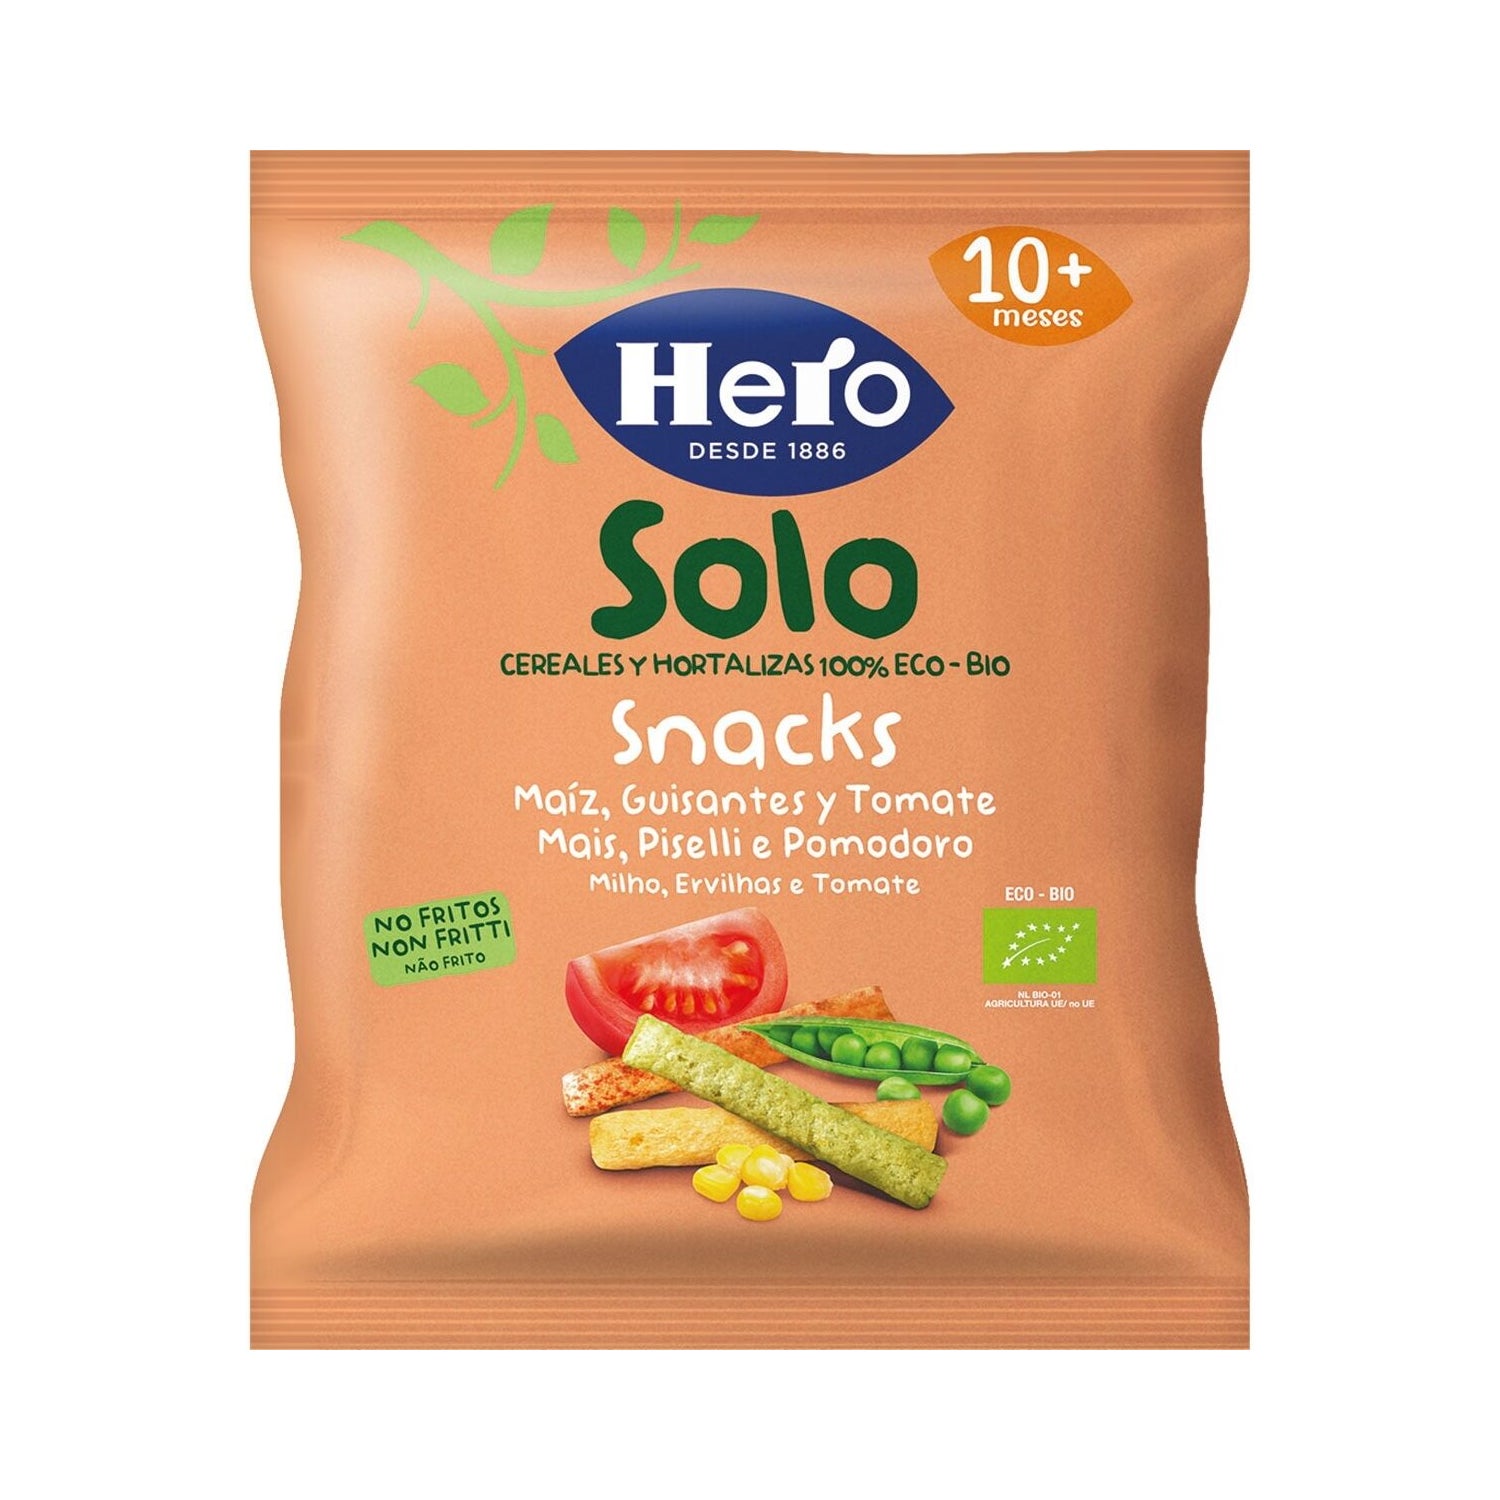 Snacks saludables y ecológicos Hero Solo